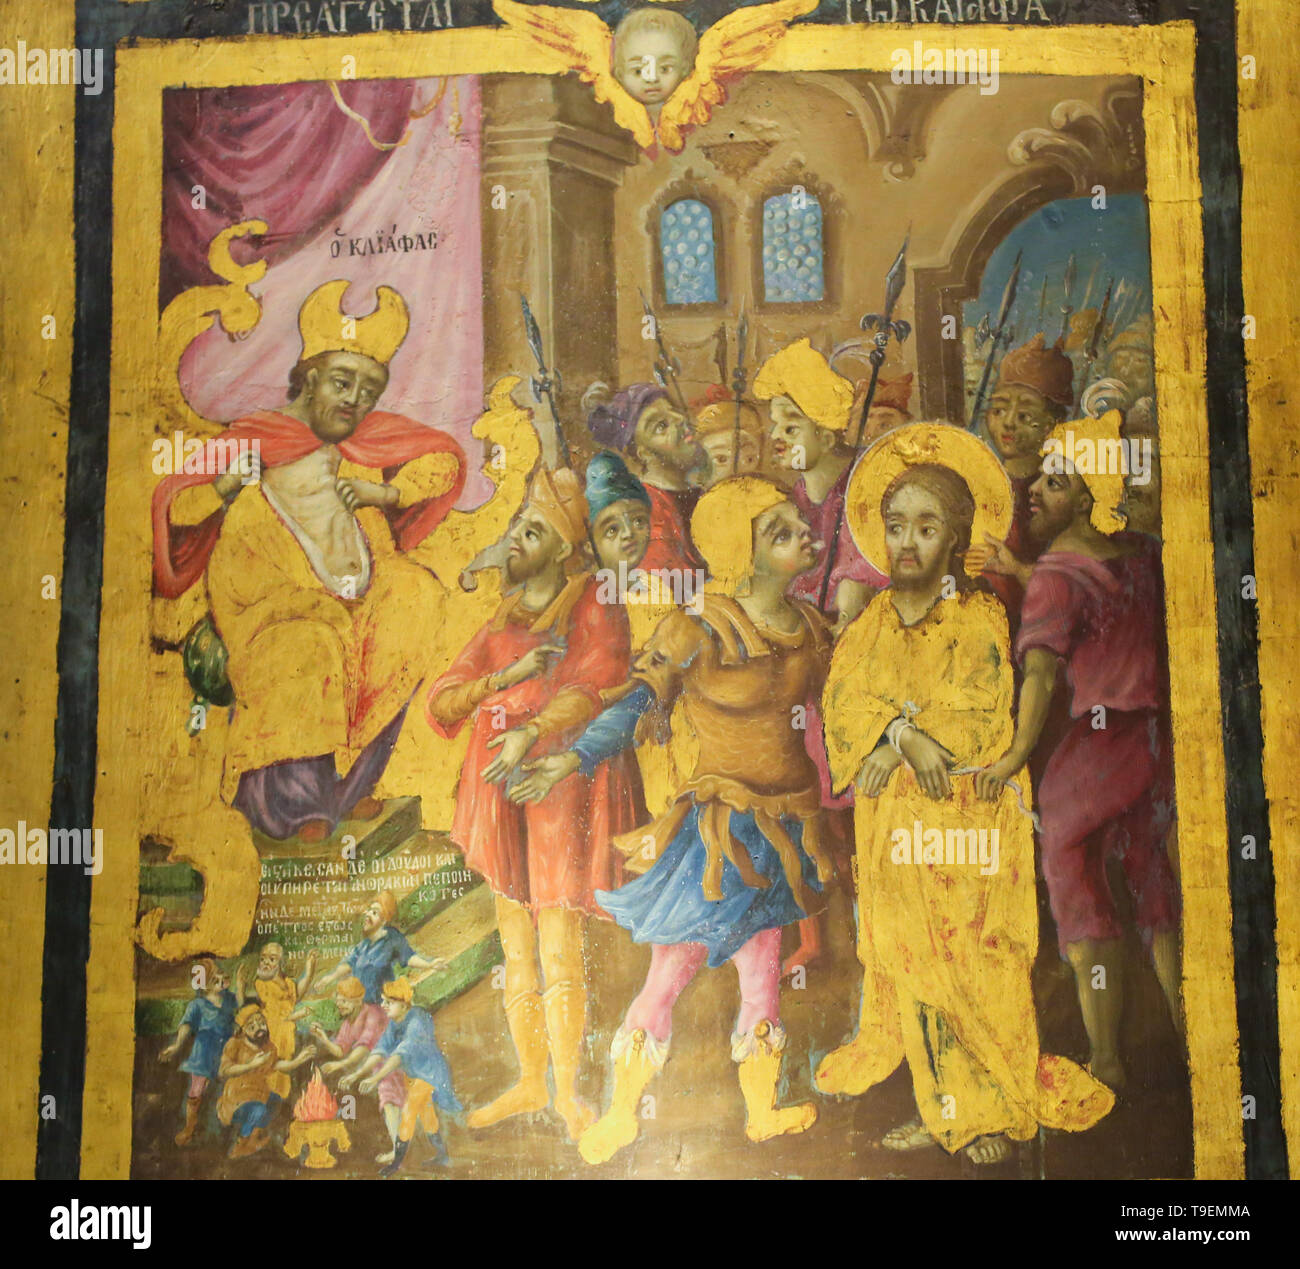 Greco-ortodossi affresco nella chiesa del Santo Sepolcro di Gerusalemme, raffigurante il sinedrio a prova di Gesù che è portato davanti a Caifa la Hig Foto Stock